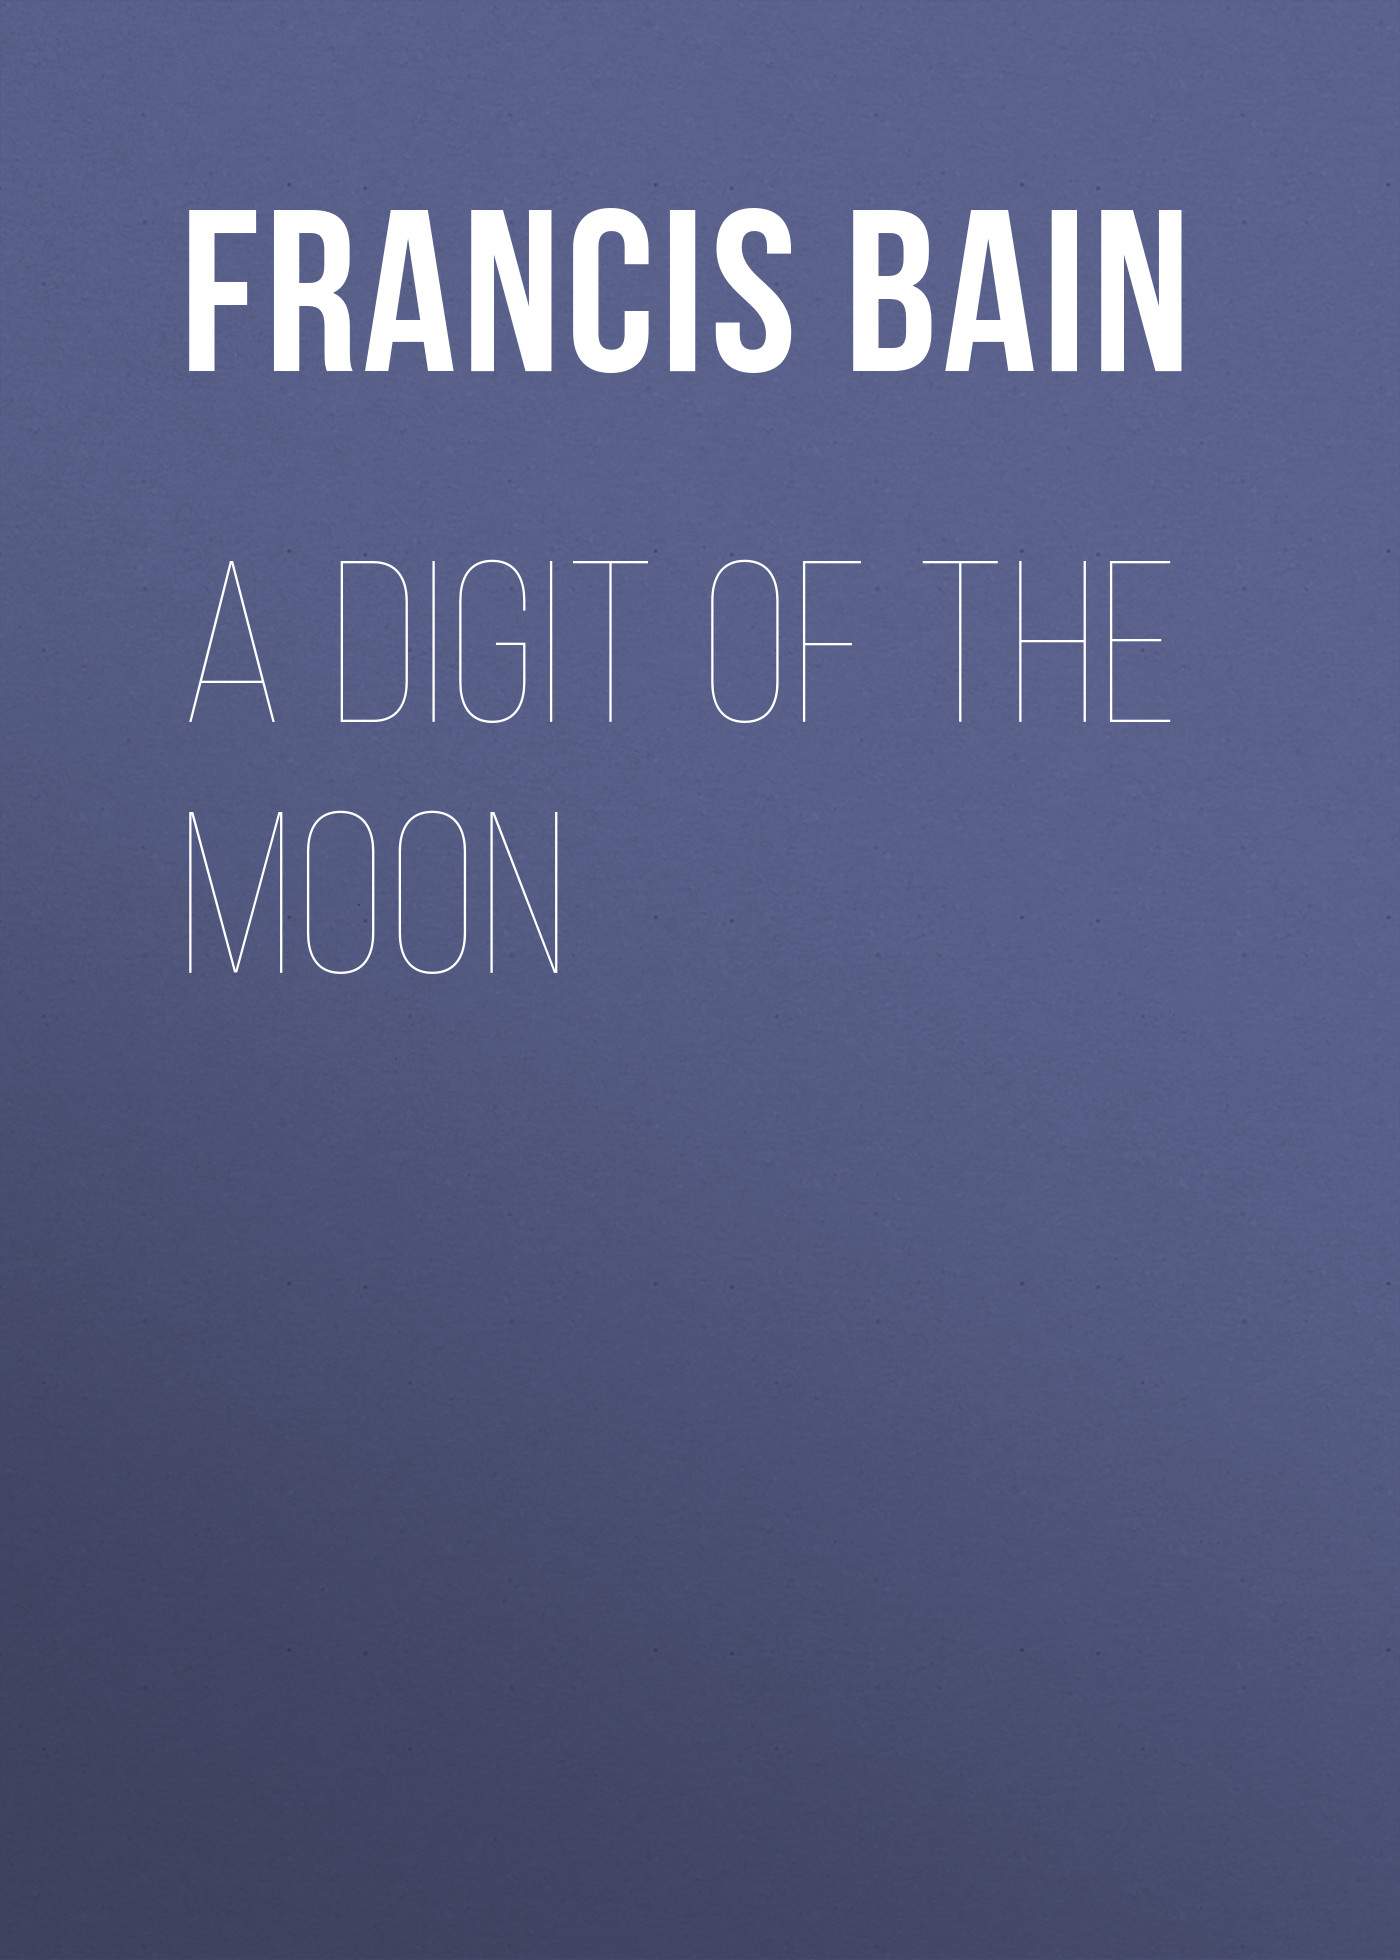 Книга A Digit of the Moon из серии , созданная Francis Bain, может относится к жанру Зарубежная старинная литература, Зарубежная классика. Стоимость электронной книги A Digit of the Moon с идентификатором 24167508 составляет 0 руб.